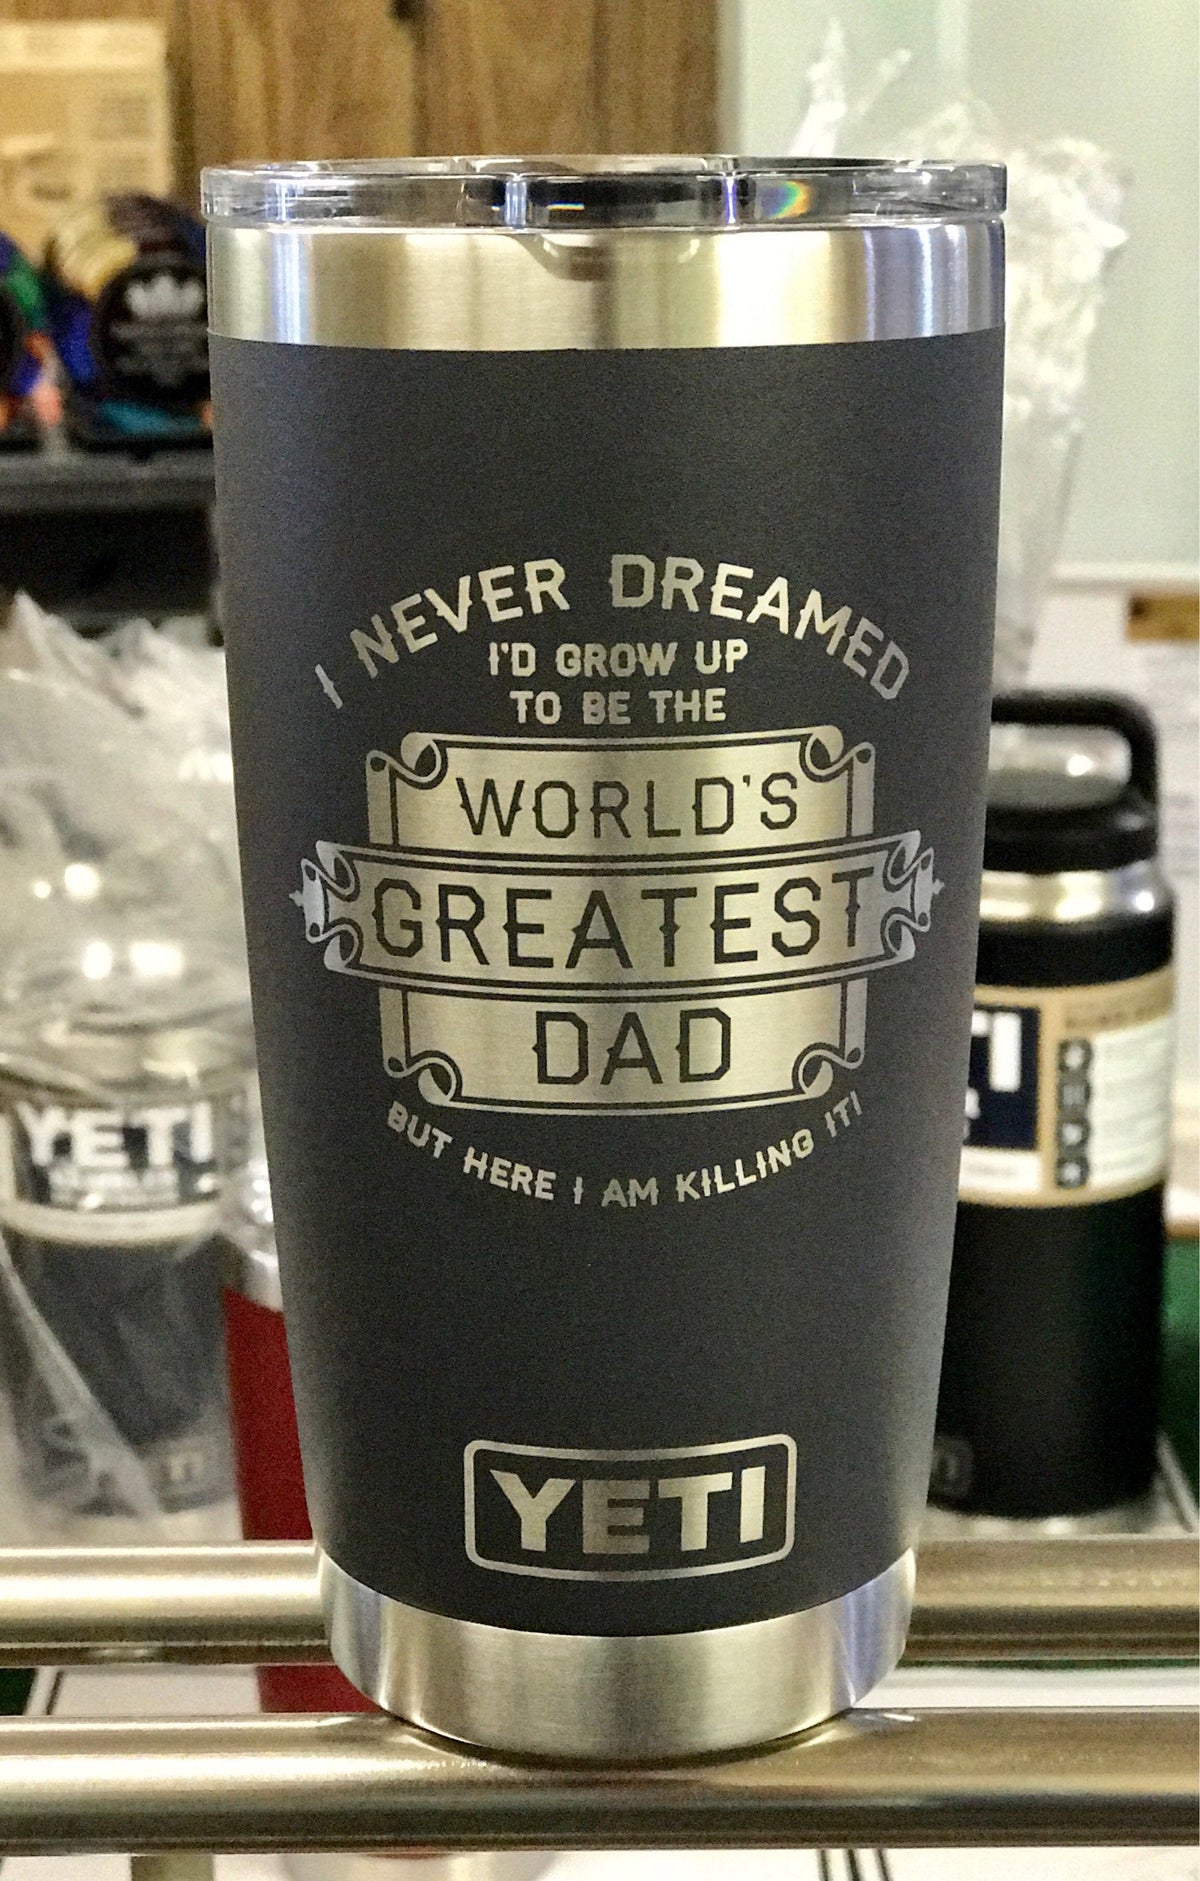 Dad Established Engraved YETI Tumbler